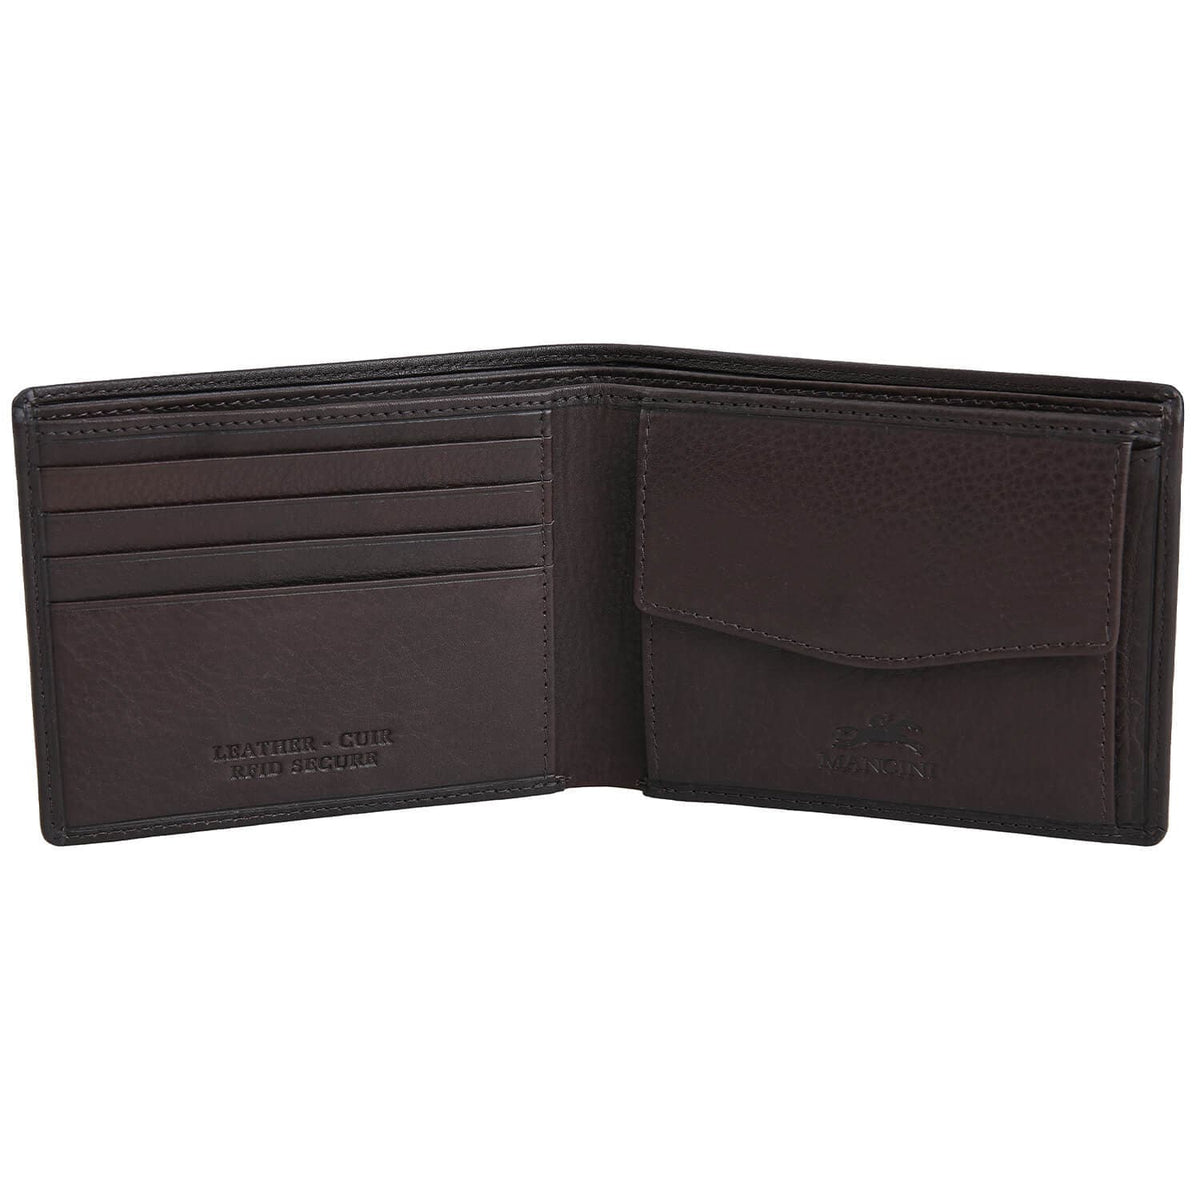 Mancini Monterrey RFID Billfold Wallet with Coin Pocket